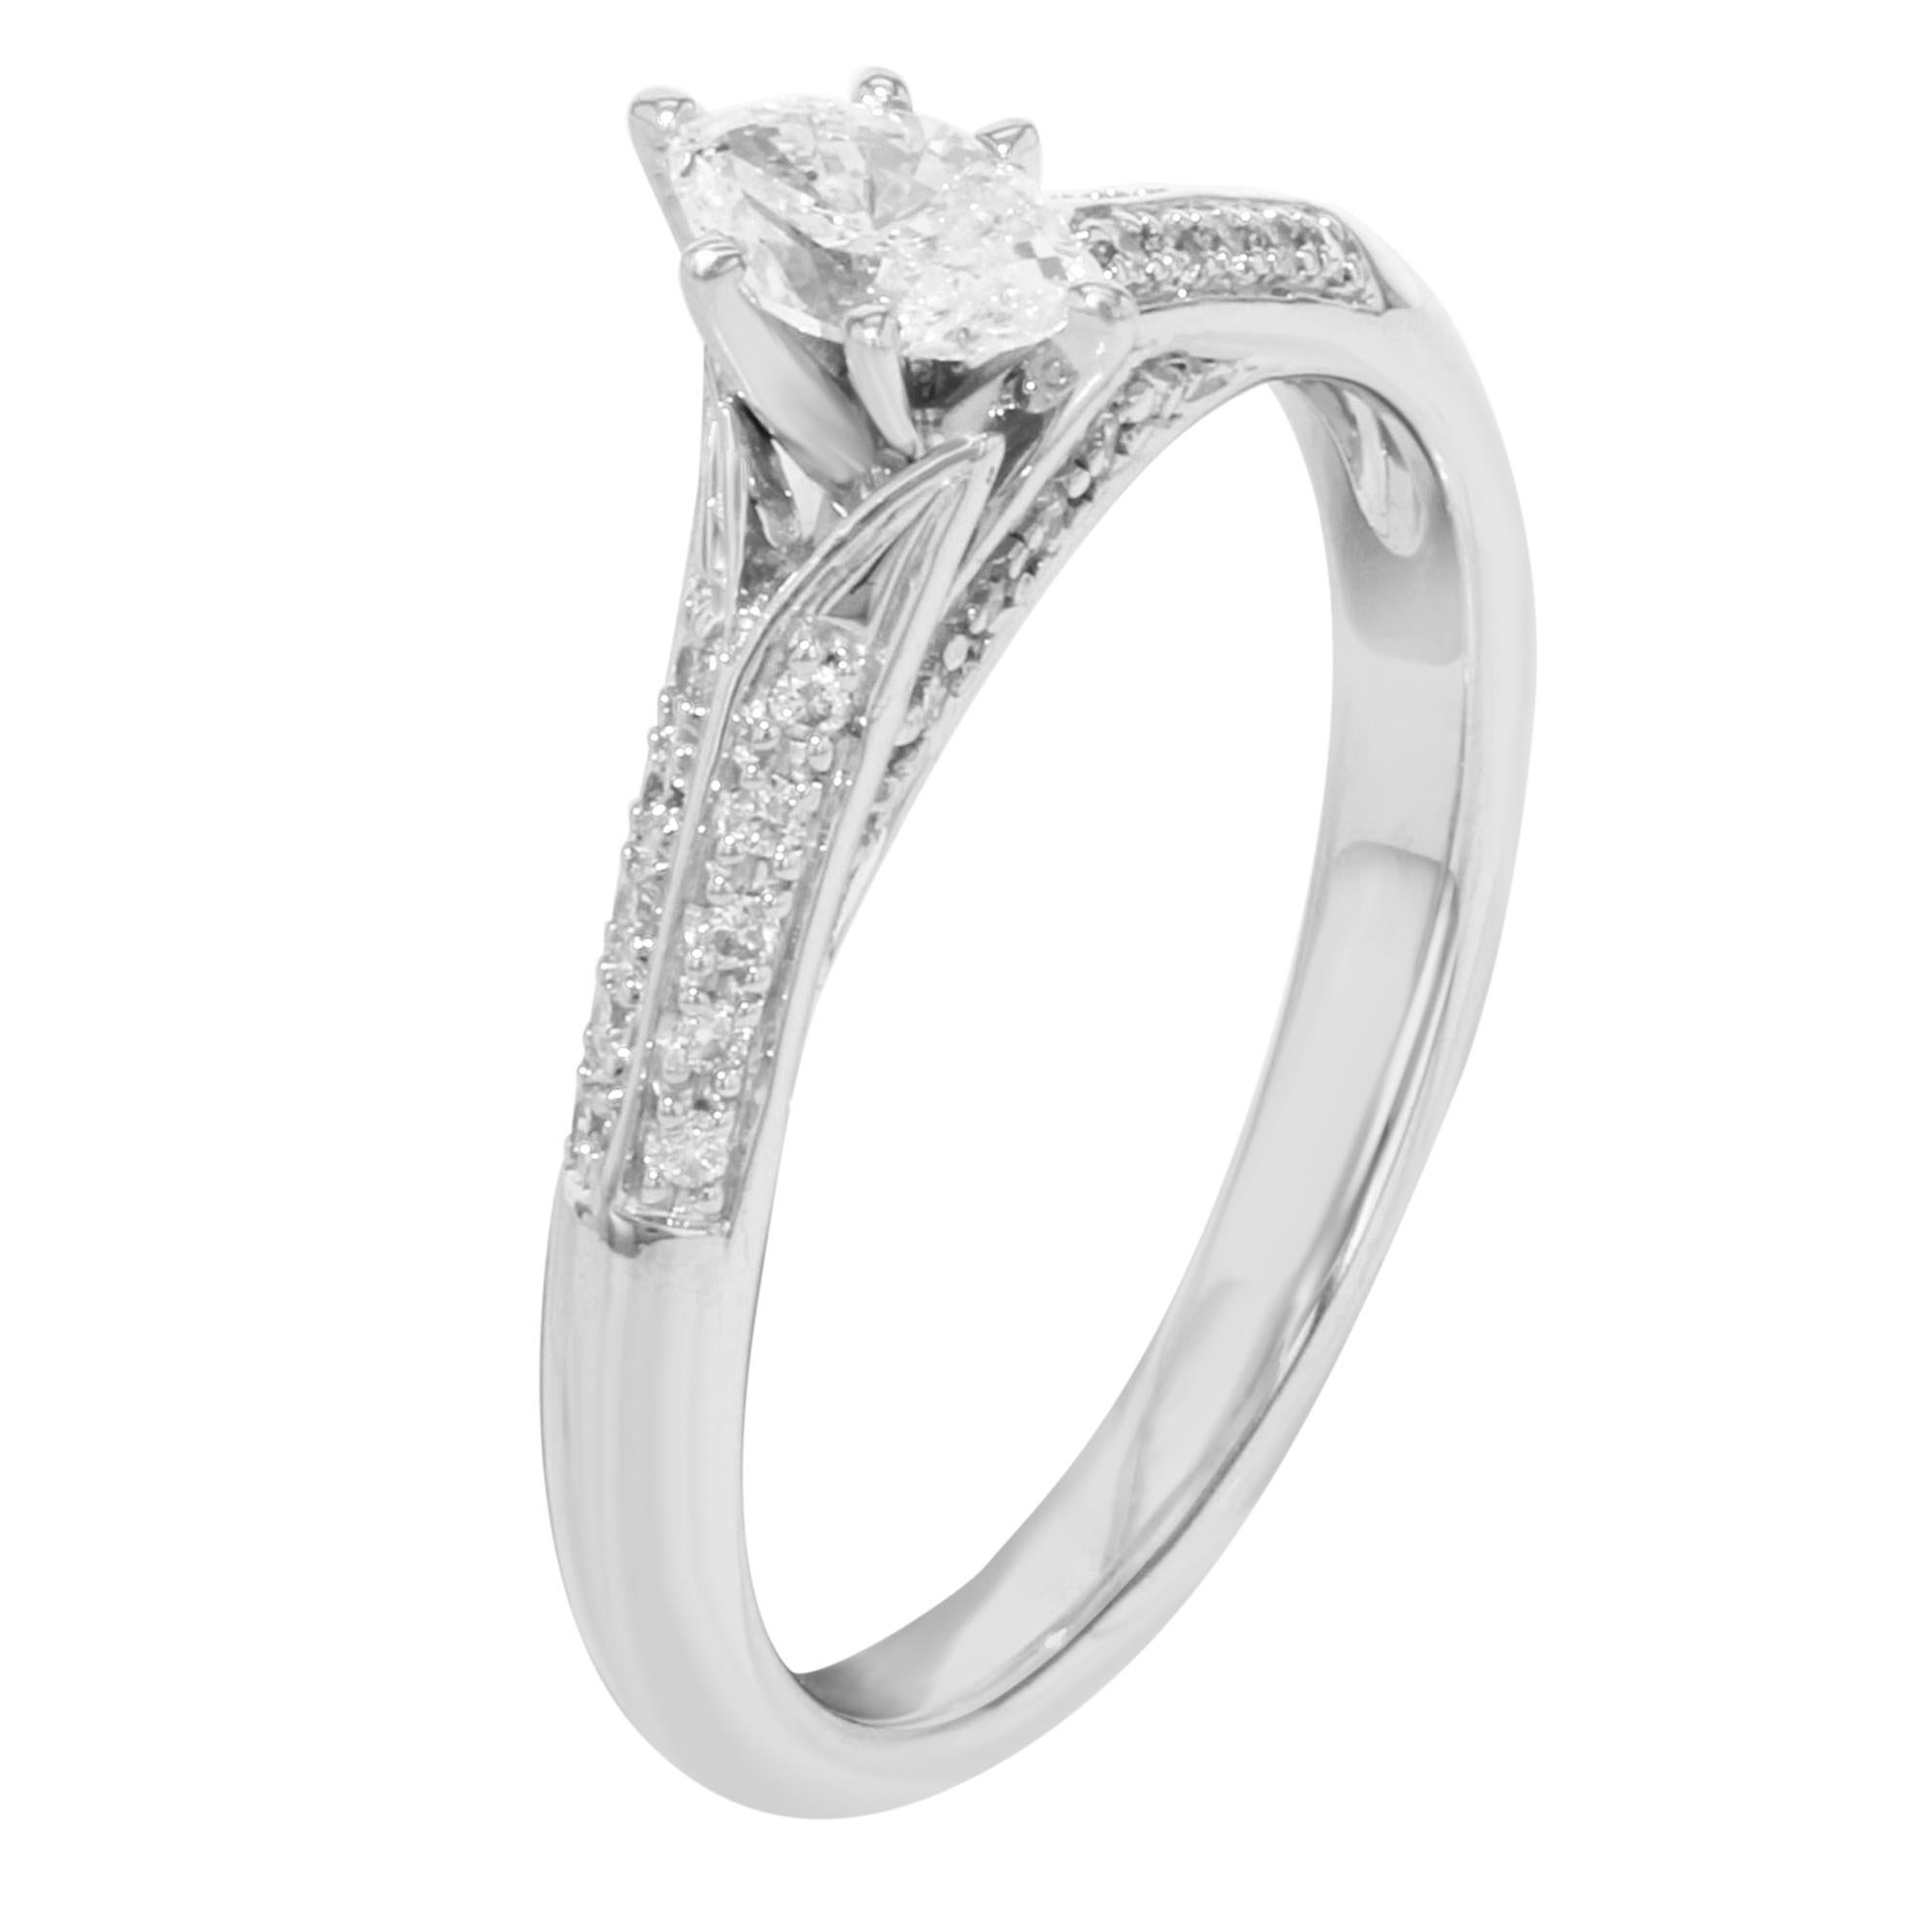 Modern Rachel Koen Diamond Womens Engagement Ring 14K White Gold 0.75Cttw Size 7.25 For Sale